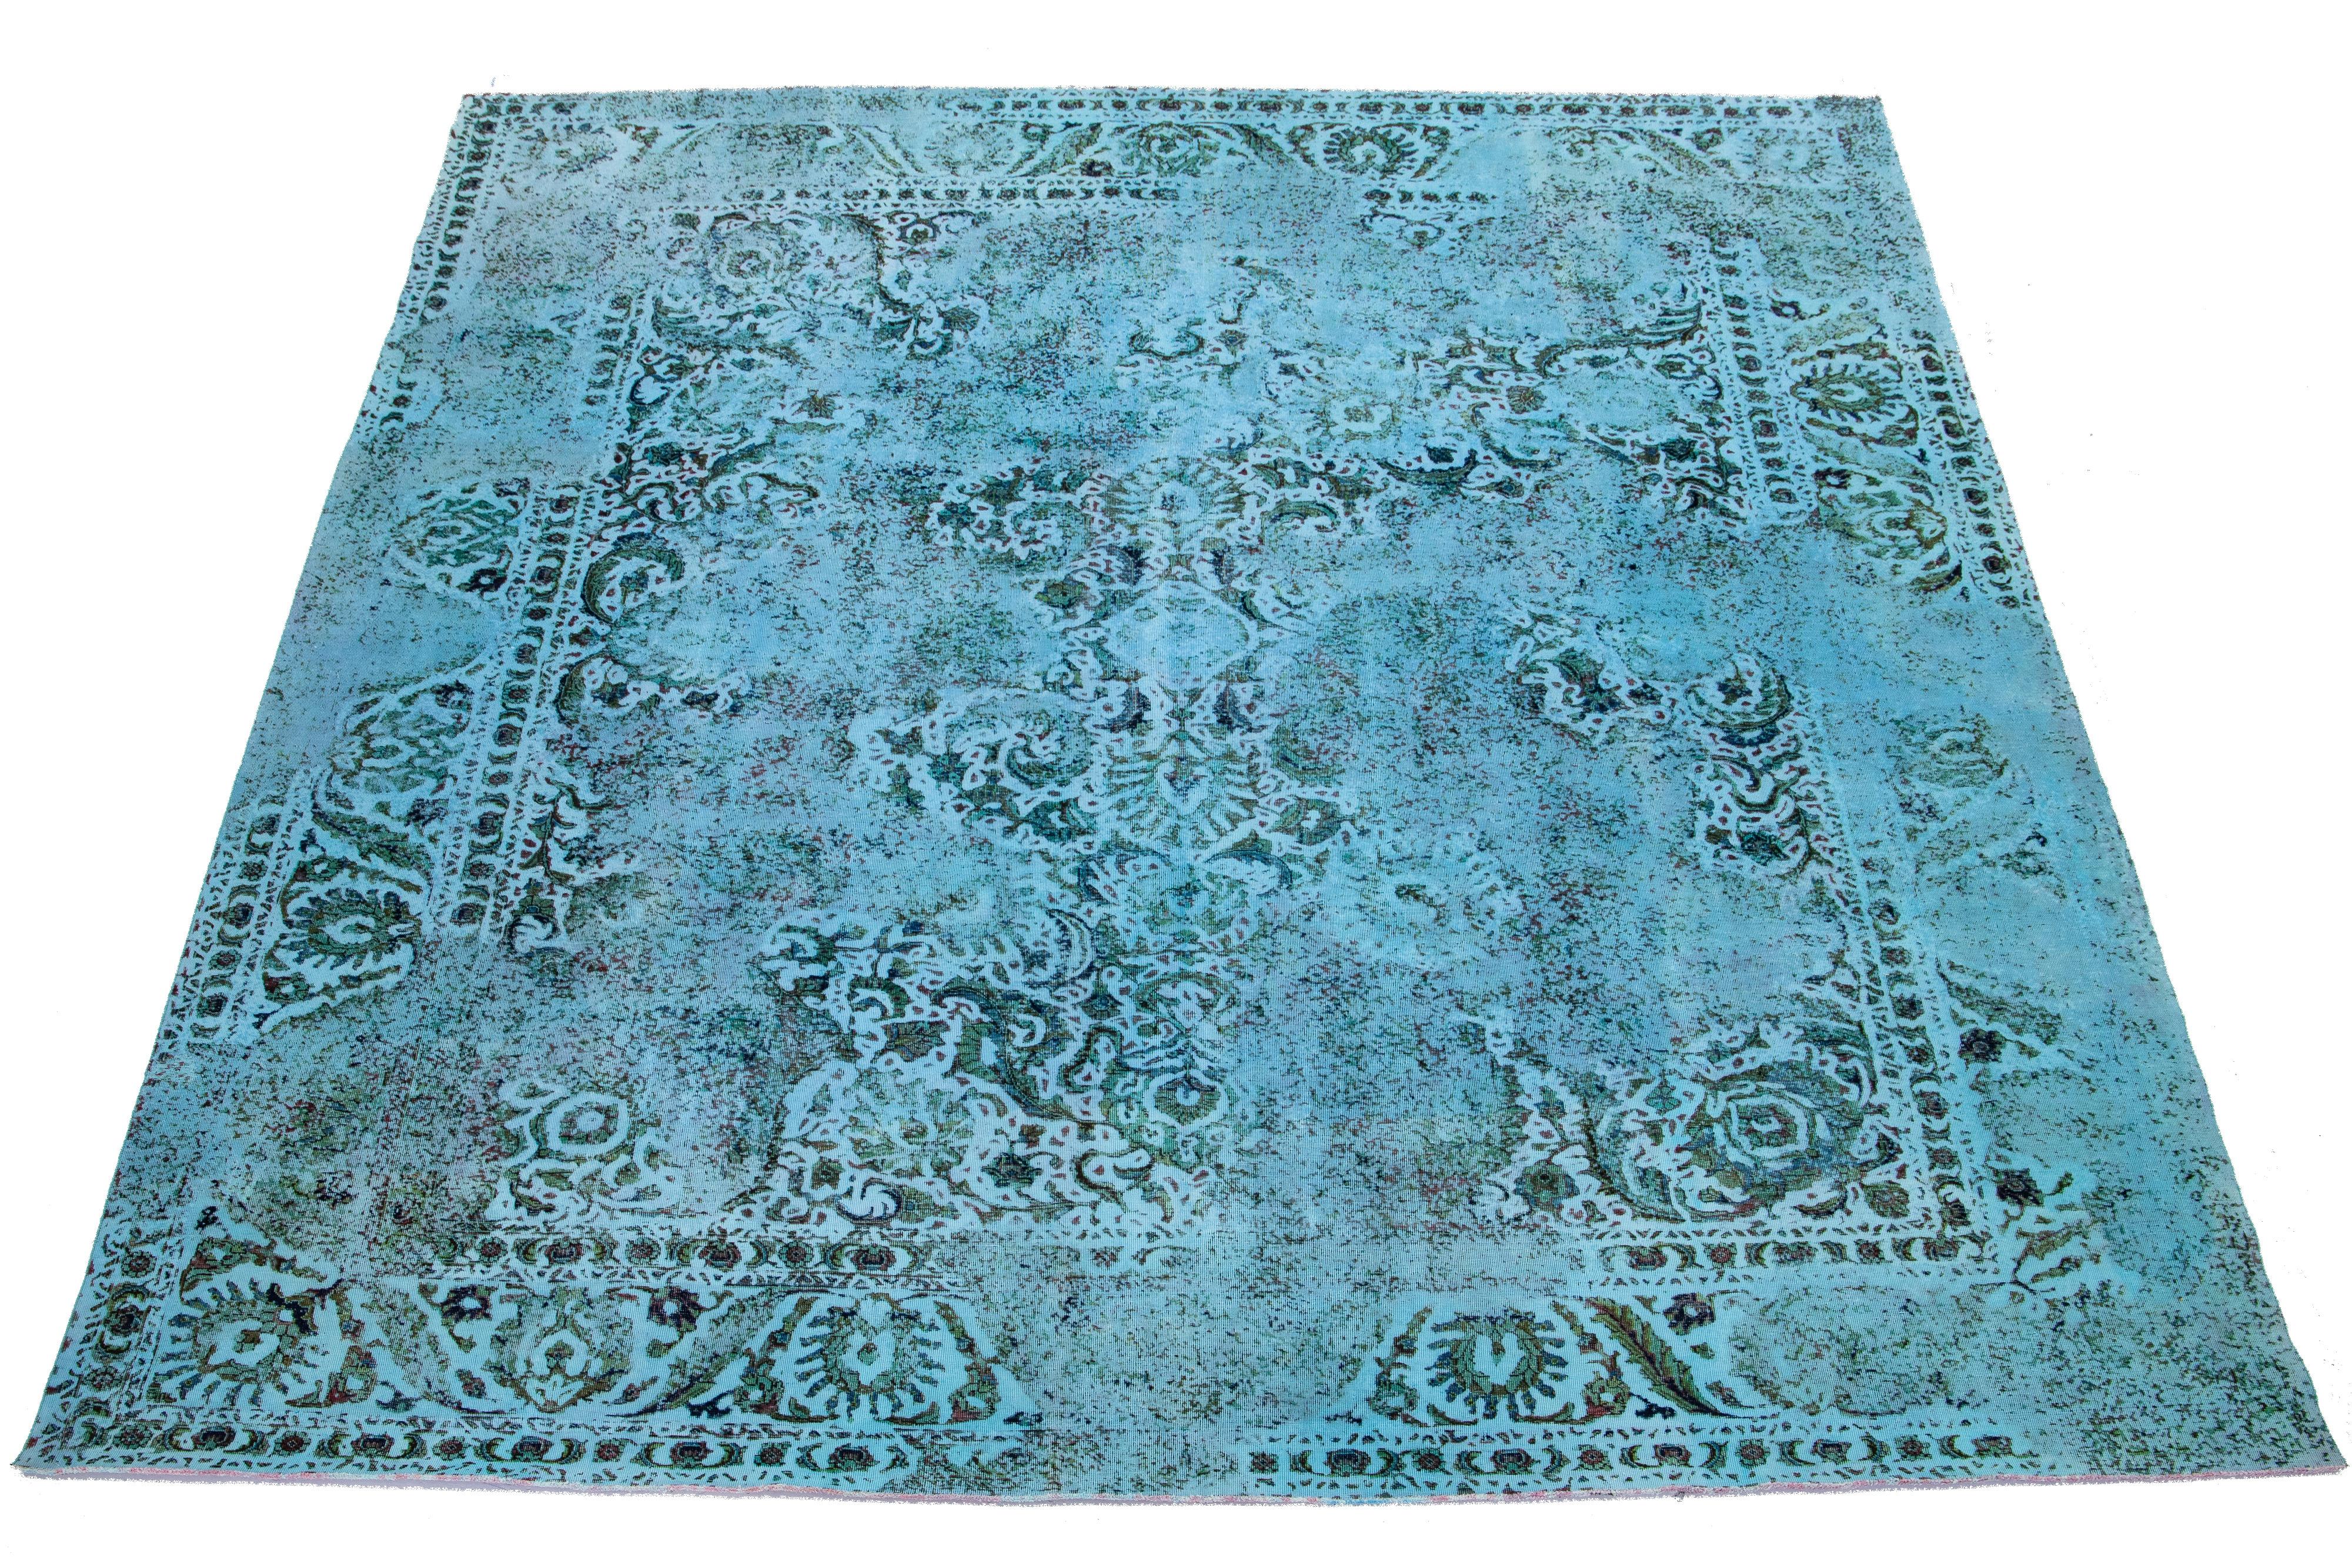 Il s'agit d'un tapis ancien en laine persane nouée à la main, de couleur bleue, avec un motif floral sur tout le pourtour et des accents gris.

Ce tapis mesure 11'3'' x 13'5